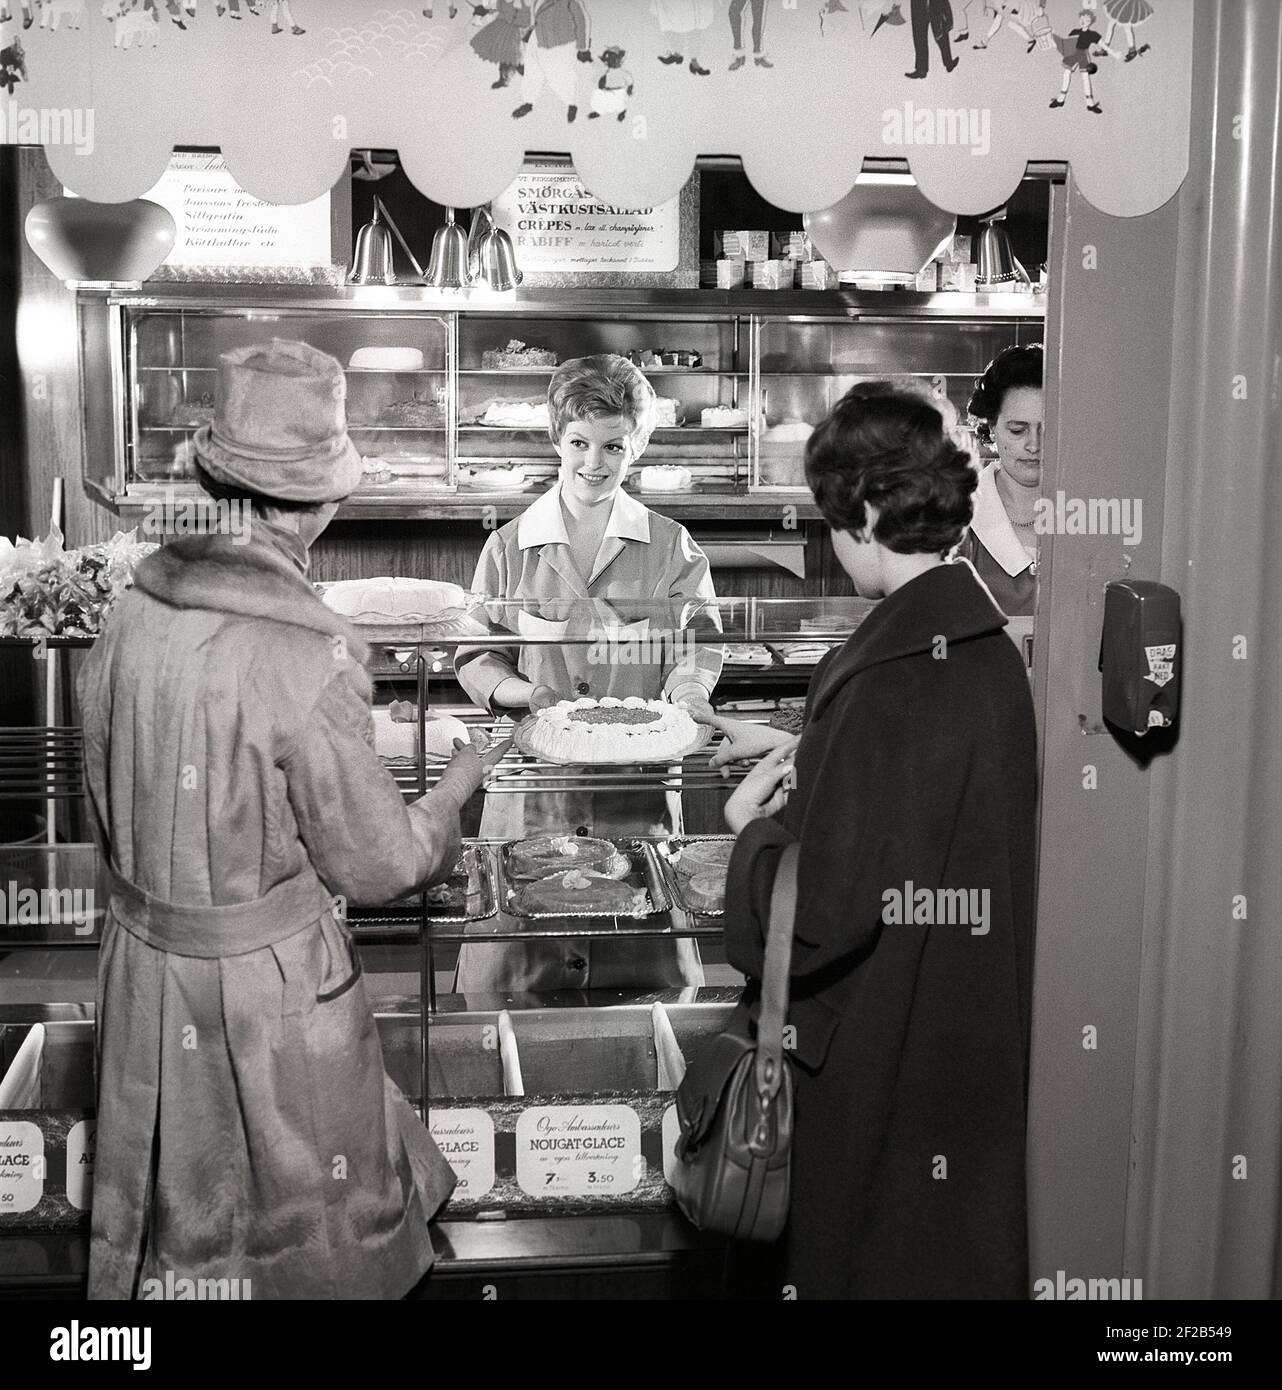 café des années 1960. Deux femmes sont debout devant le comptoir qui est plein de gâteaux et de pâtisseries fraîchement sortis du four. Suède années 60 réf. CX80-4 Banque D'Images